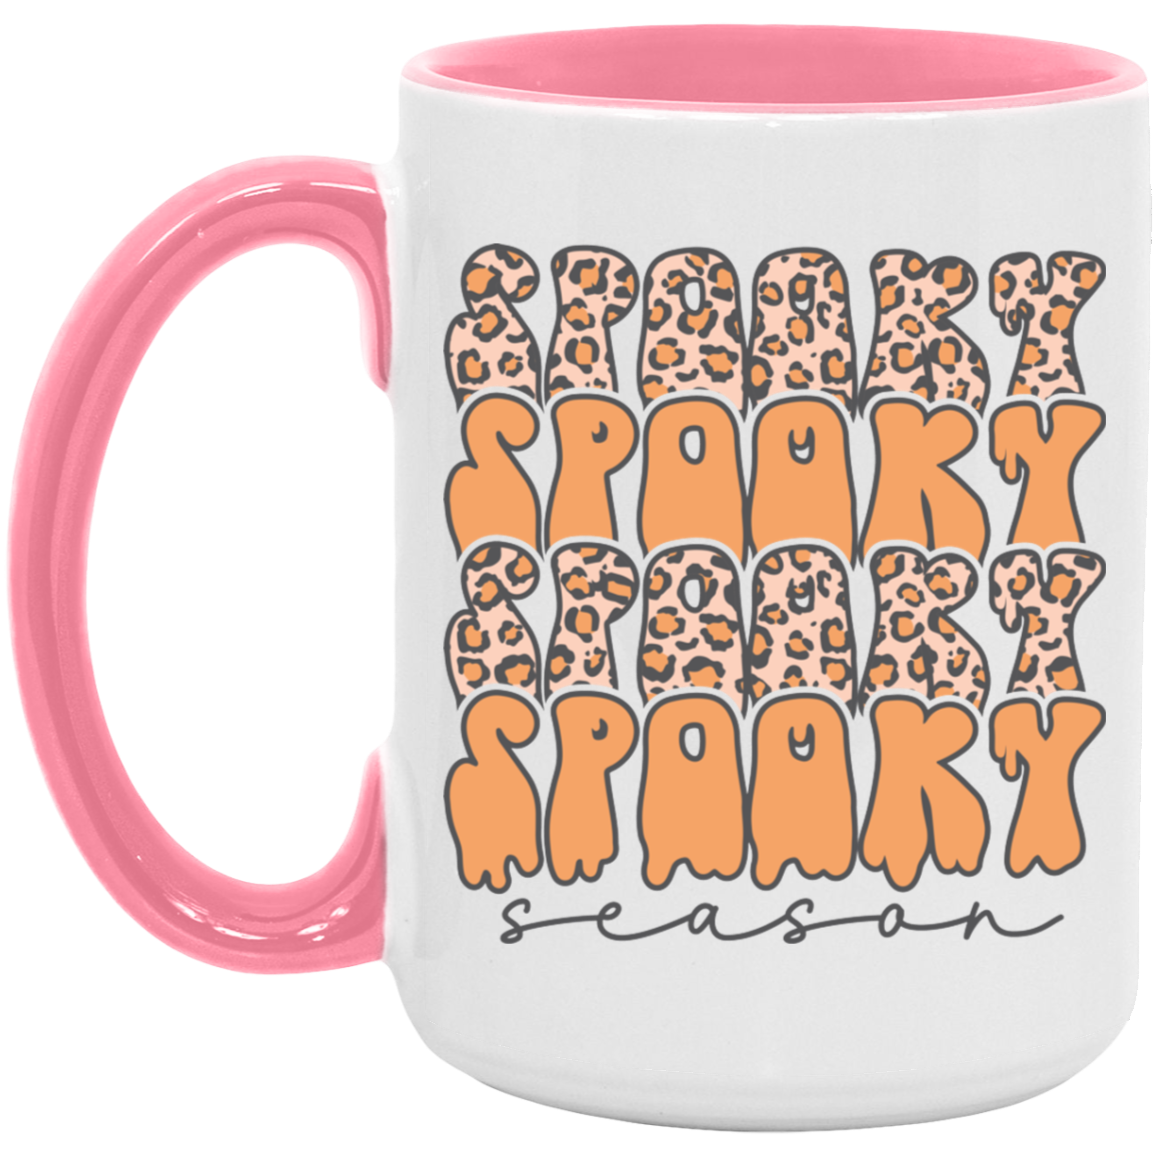 Spooky Season Cheetah Mug